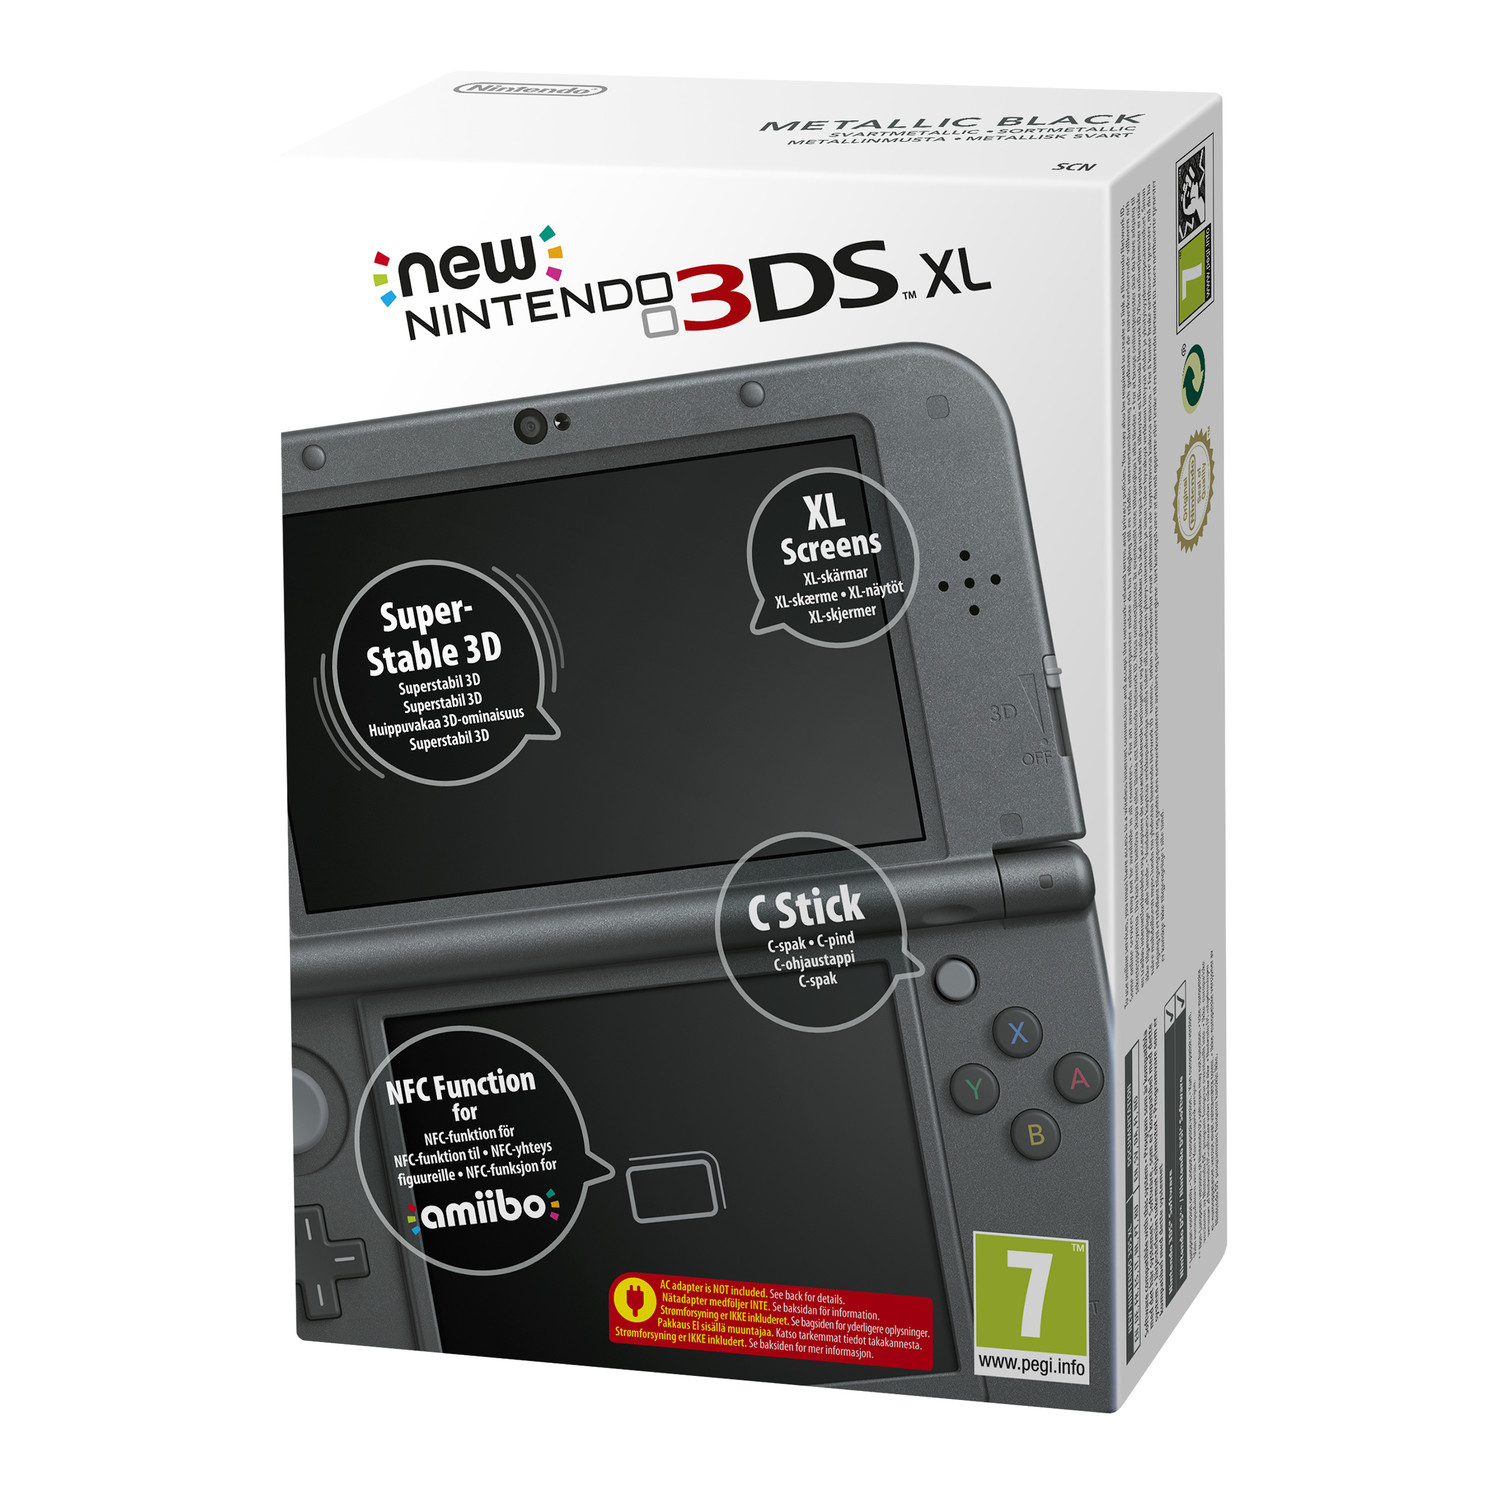 Kardinaal oppervlakkig Ineenstorting New Nintendo 3DS XL - Zwart / Metallic Black (in doos) met garantie -  Reway.nl